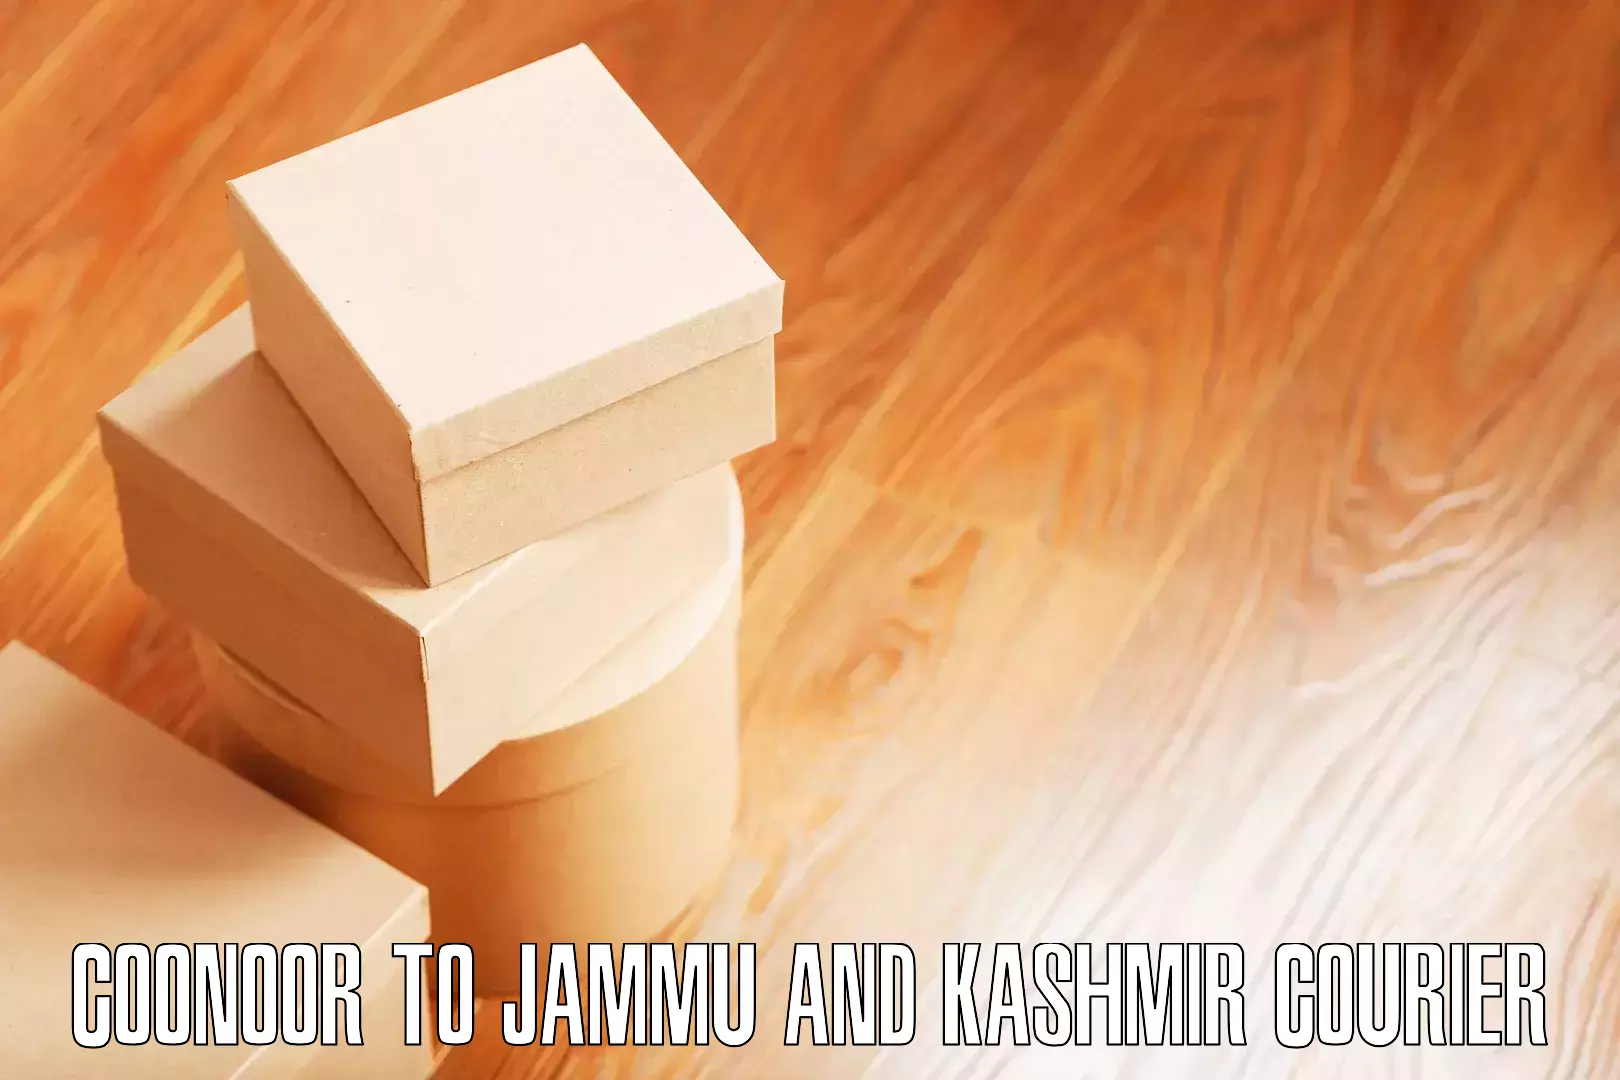 Furniture moving assistance Coonoor to University of Kashmir Srinagar